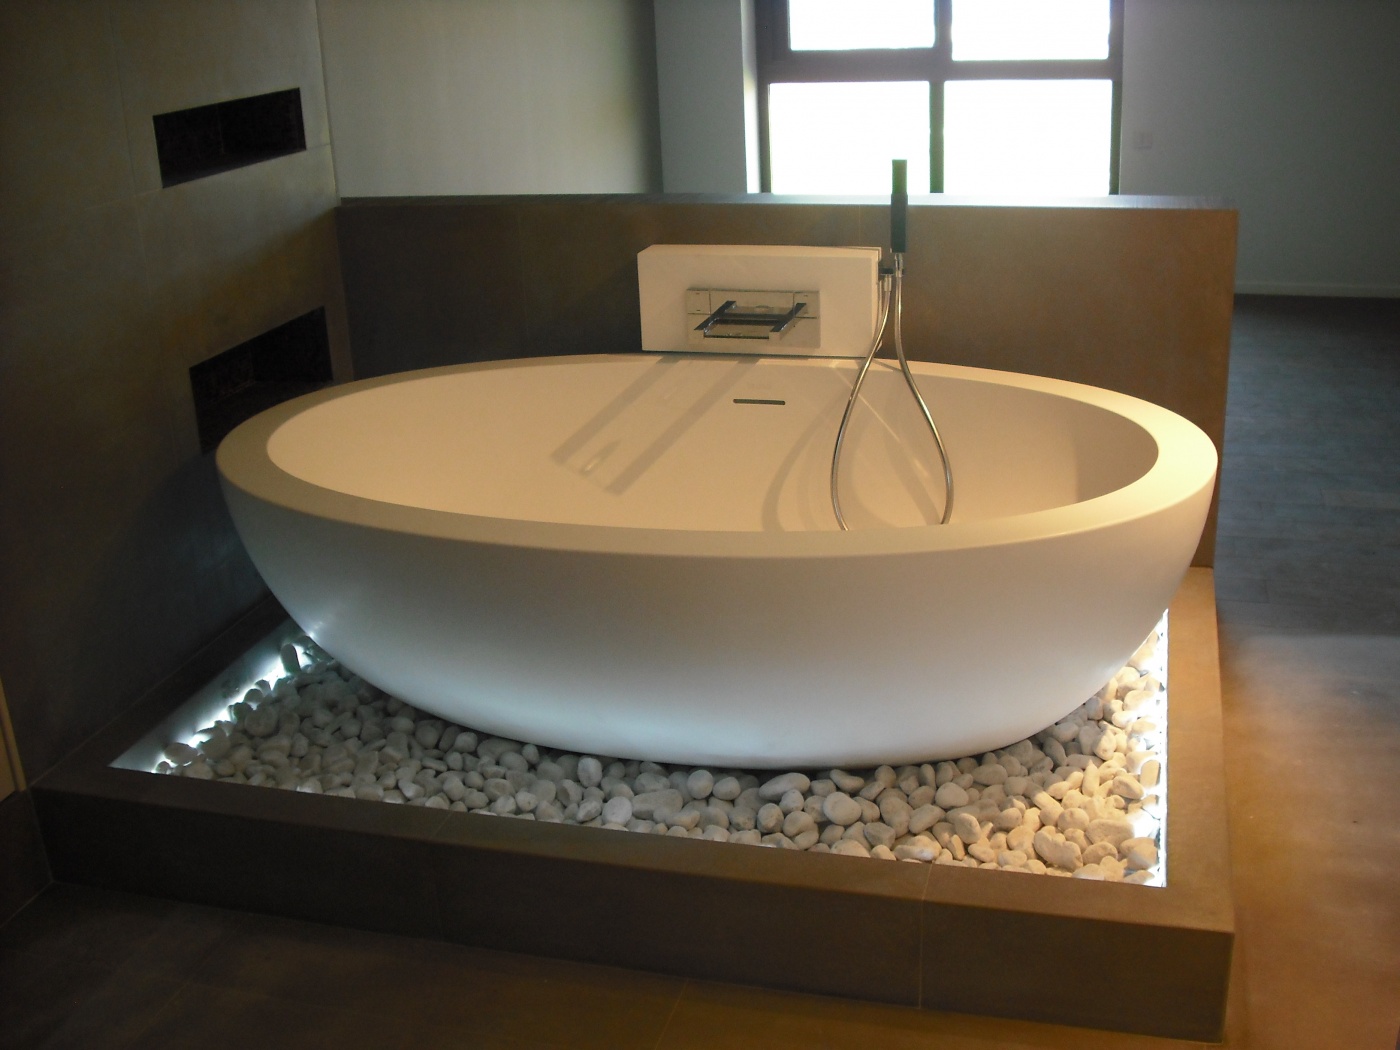 Marble Salle de bain design en pierre Gris Barcelone
Baignoire Boffi